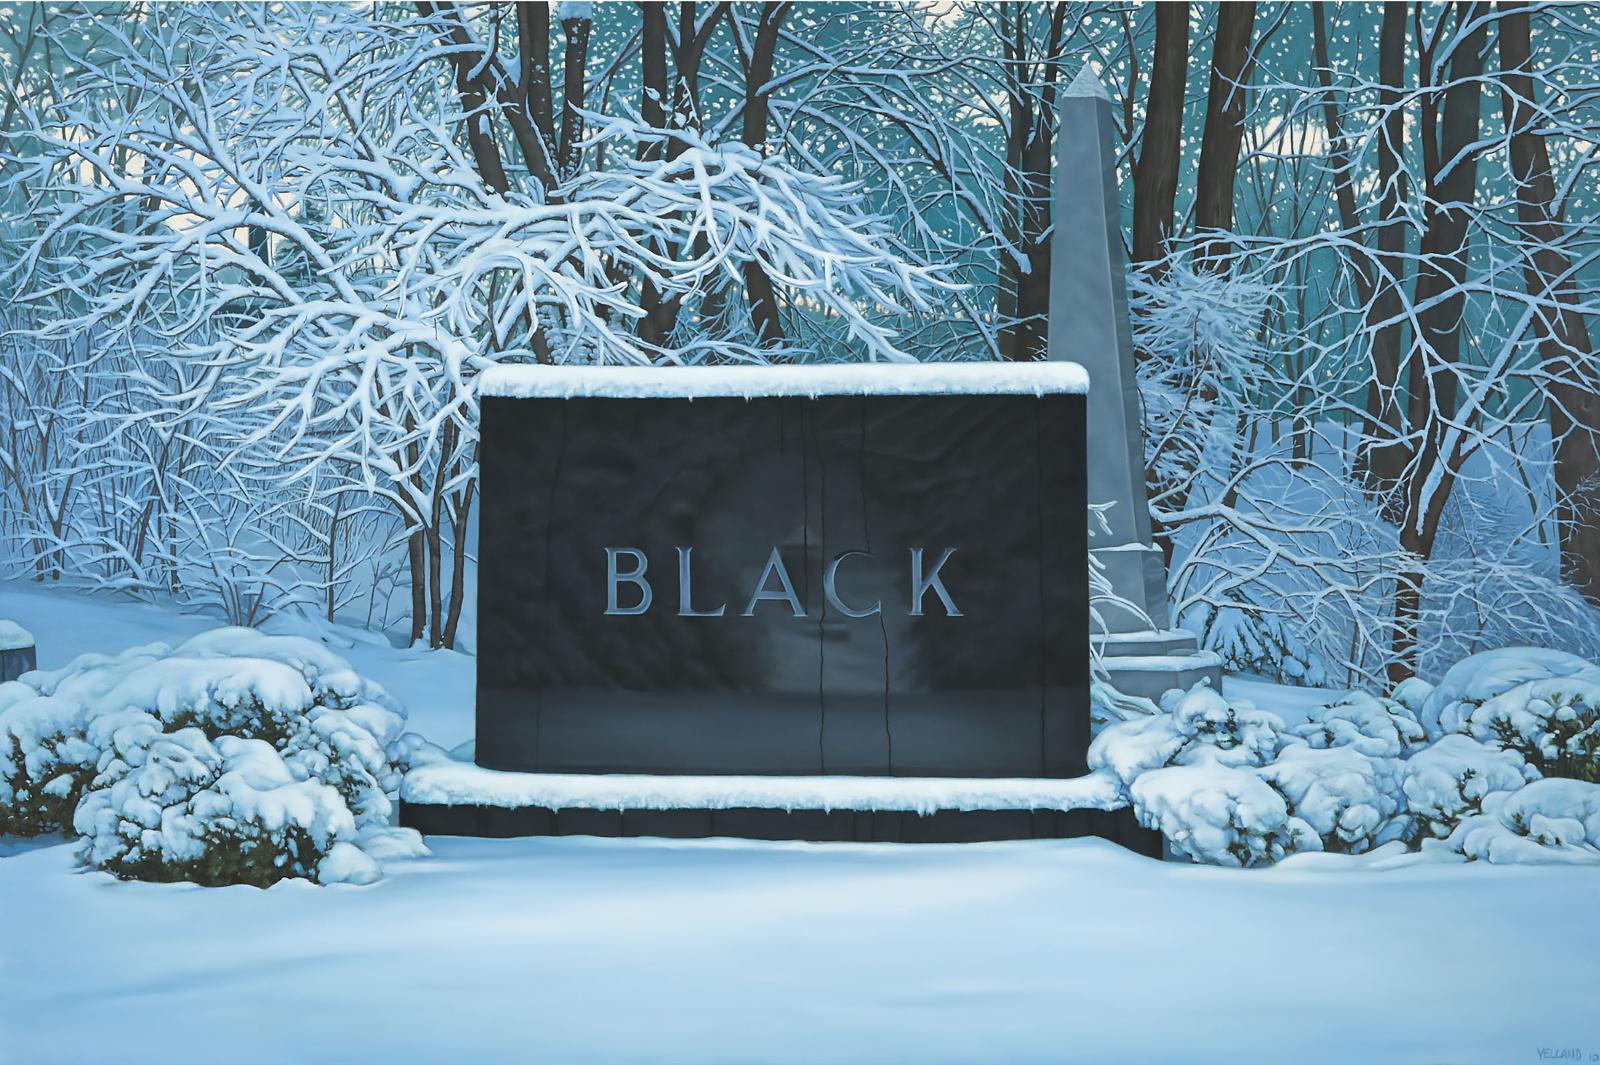 Sean Yelland (1966) - Black In White, 2010